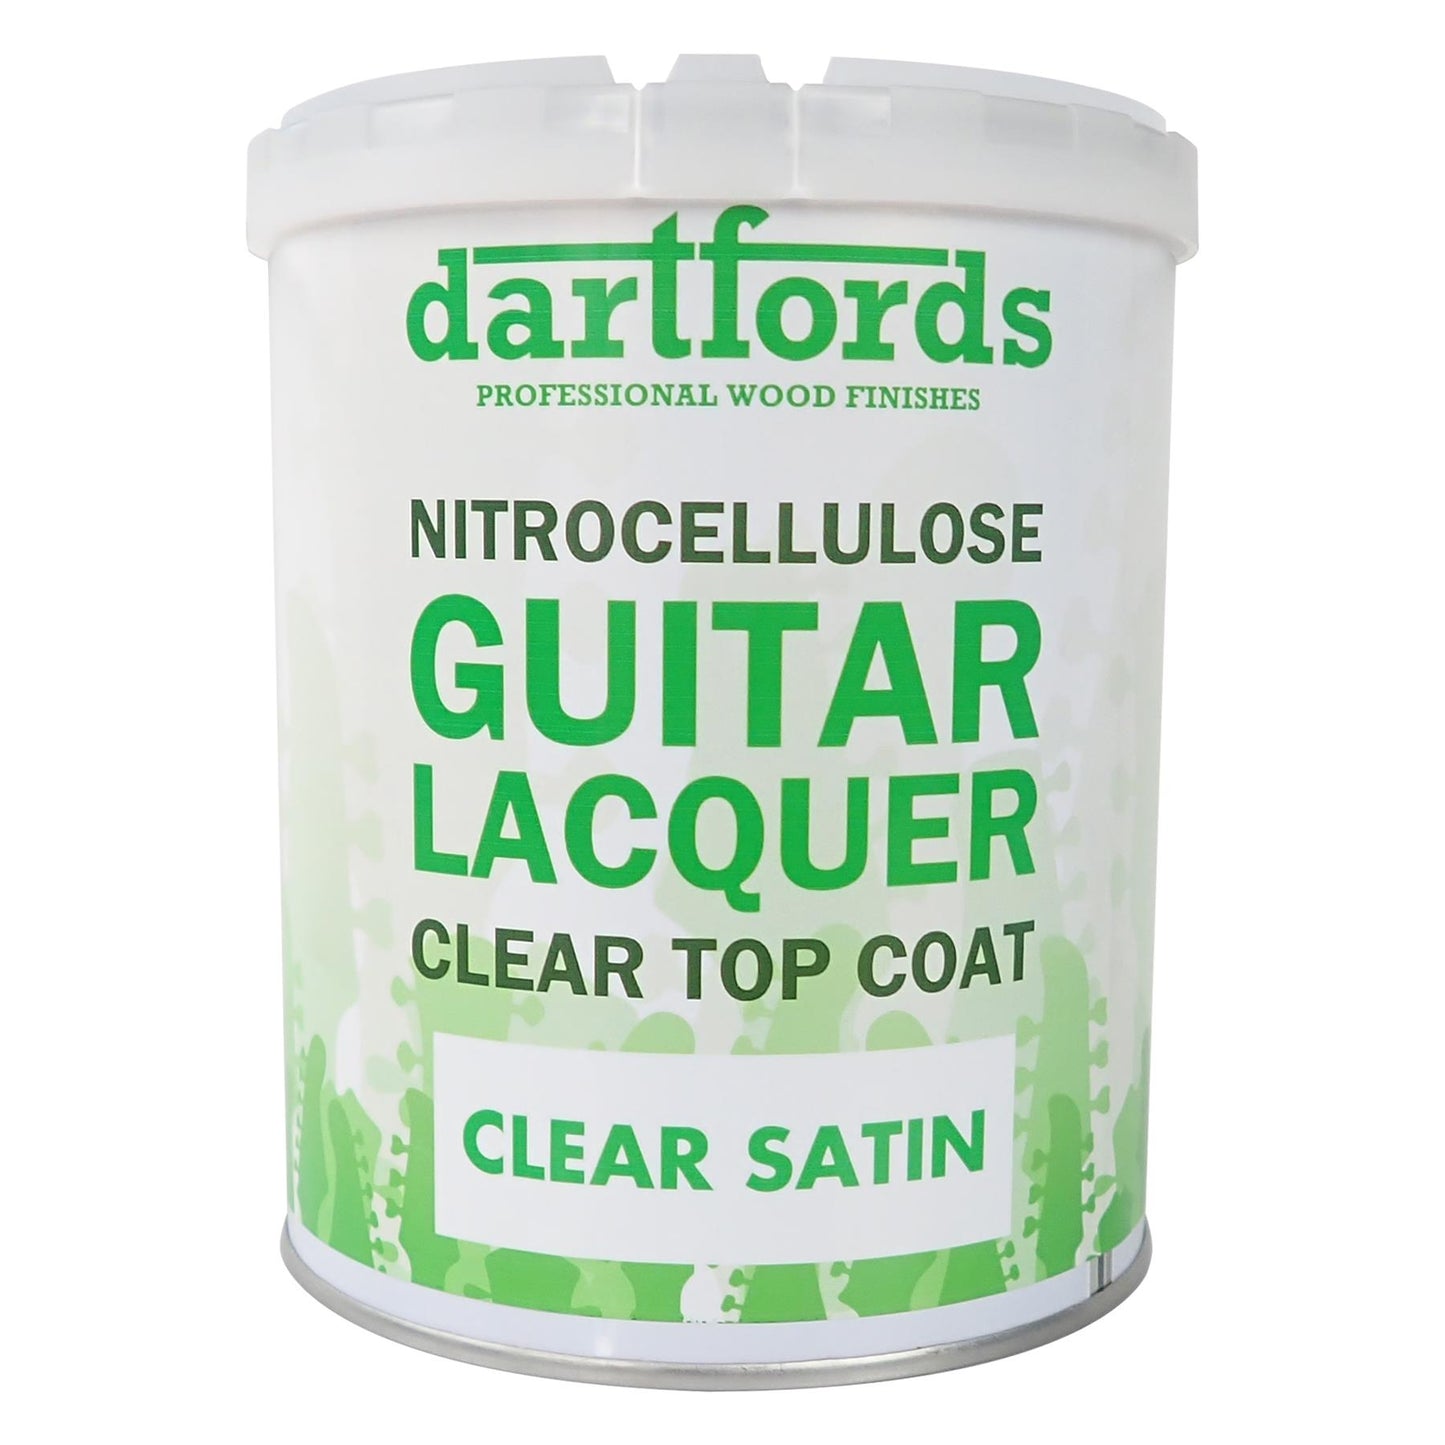 dartfords Satin Clear Nitrocellulose Guitar Lacquer - 1 litre Tin